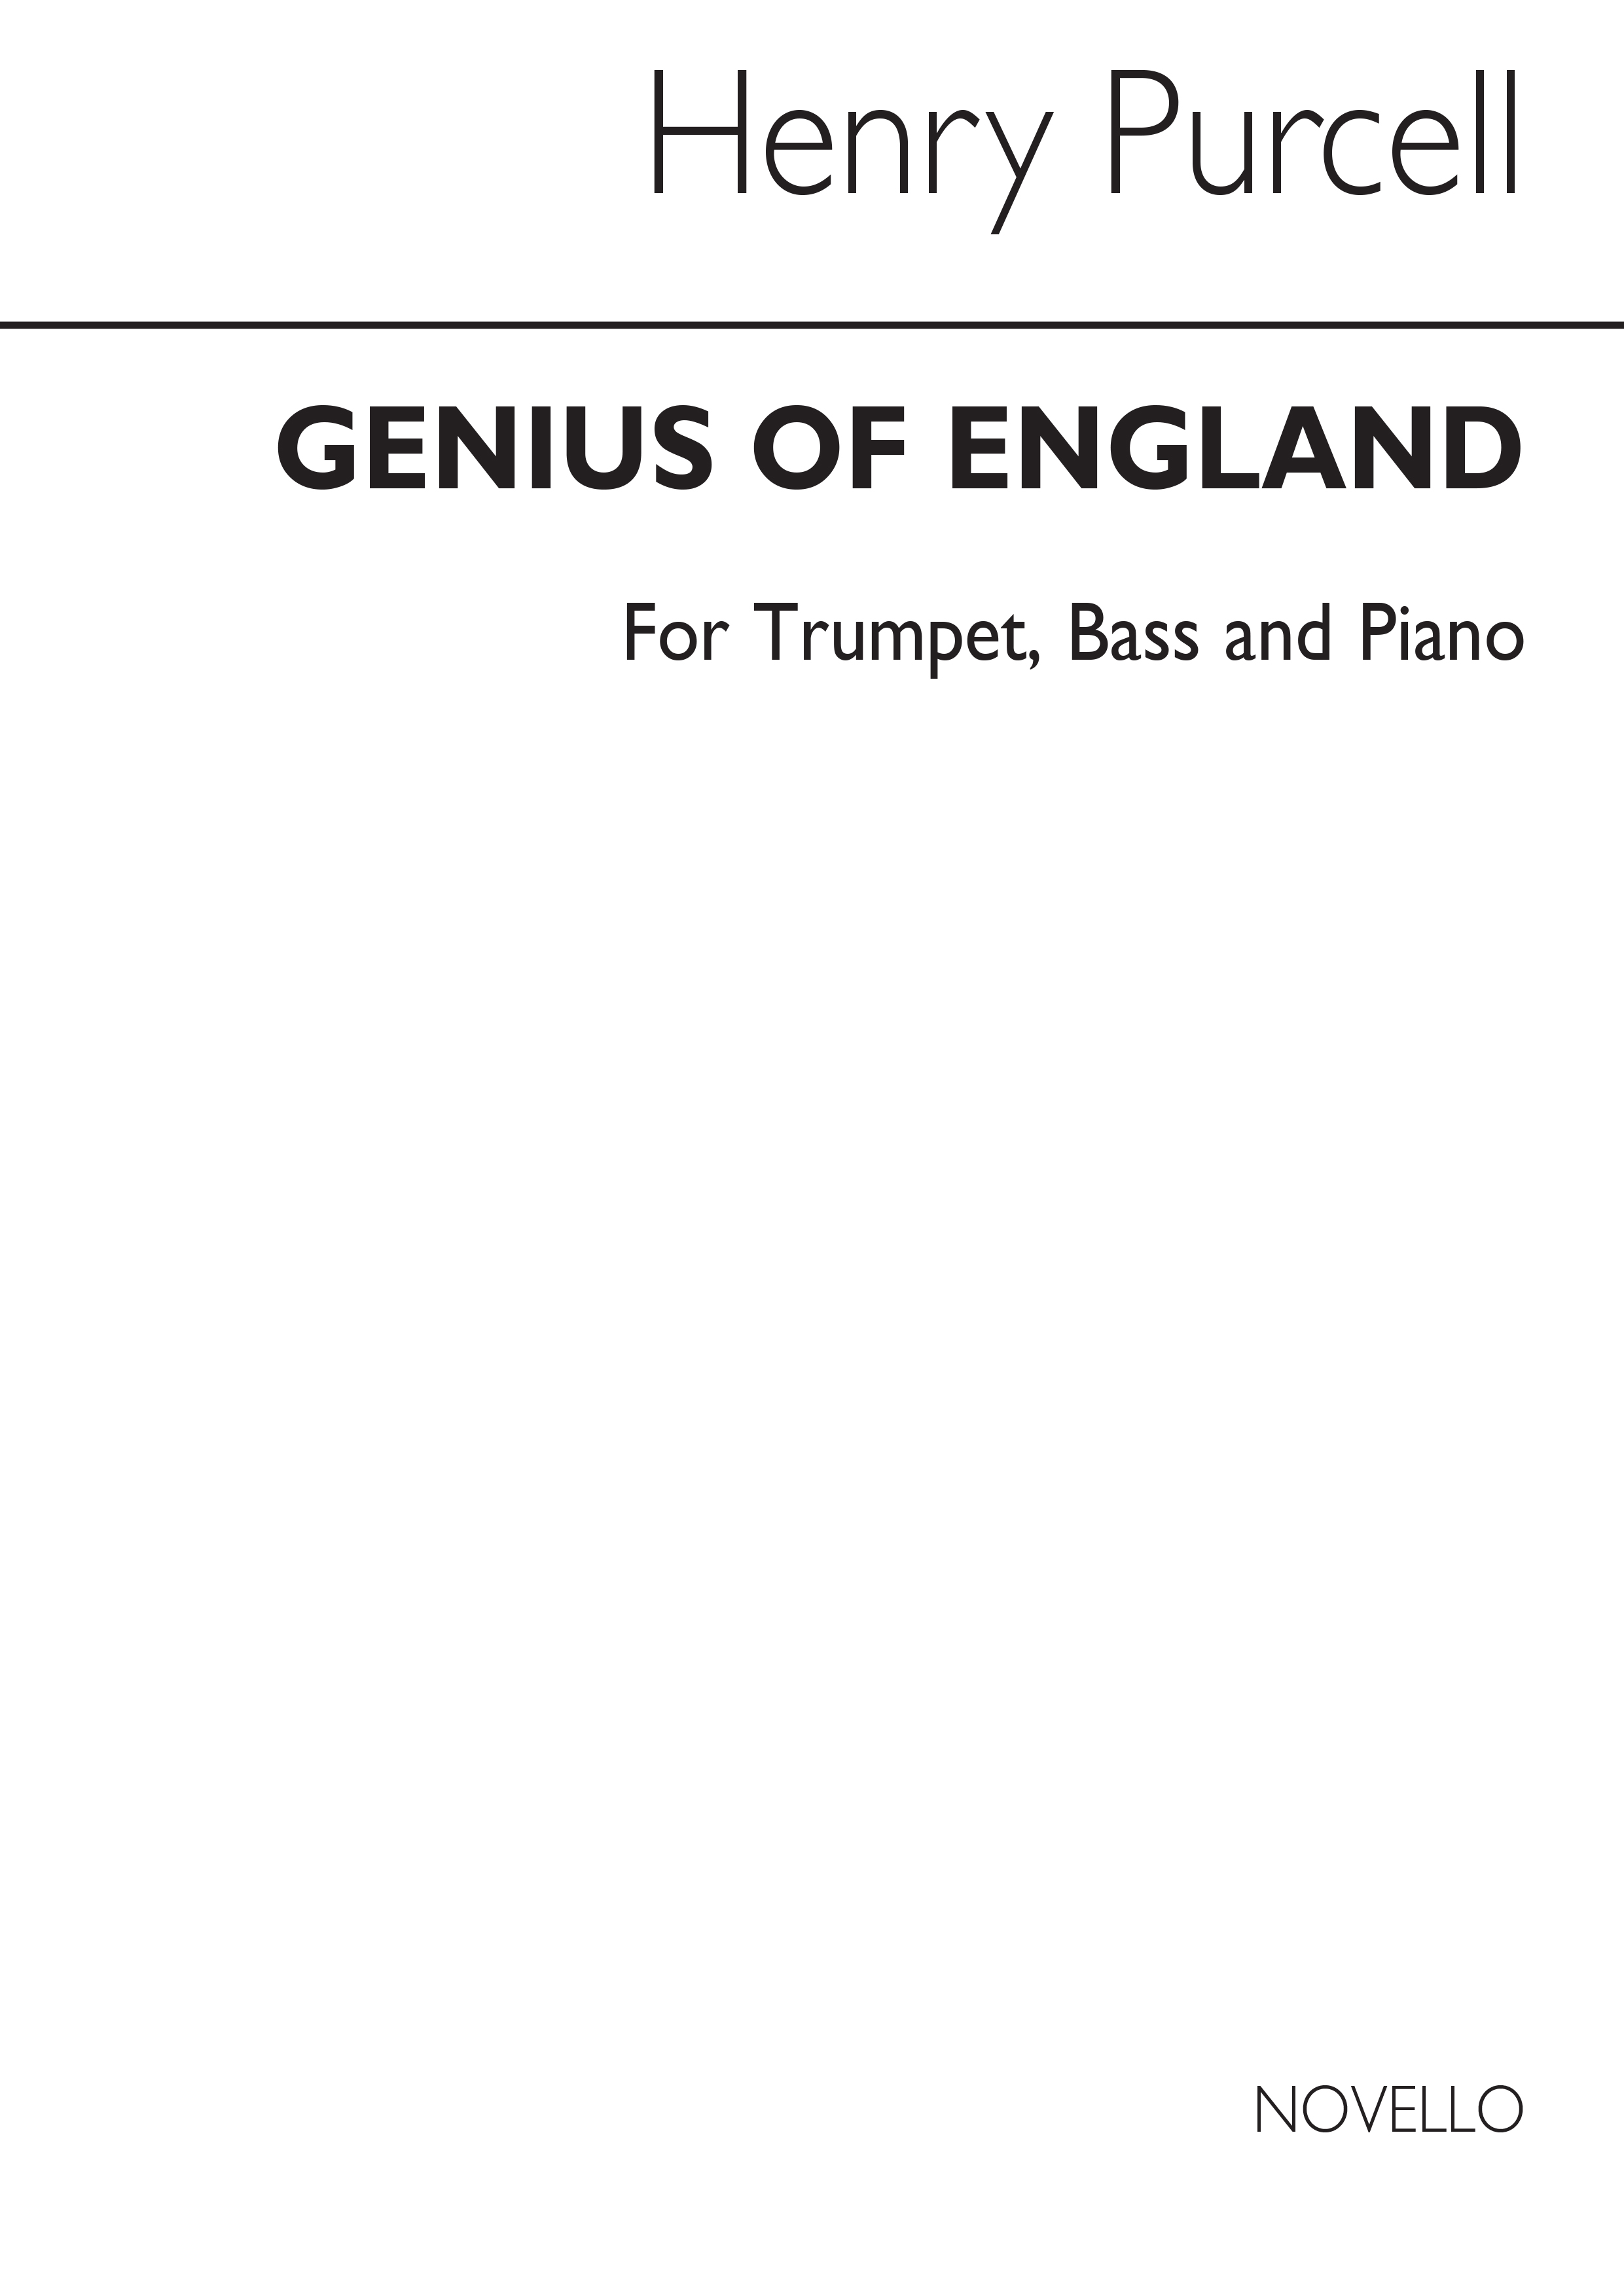 Purcell, H Genius Of England Soprano/Tenor Solo/Piano